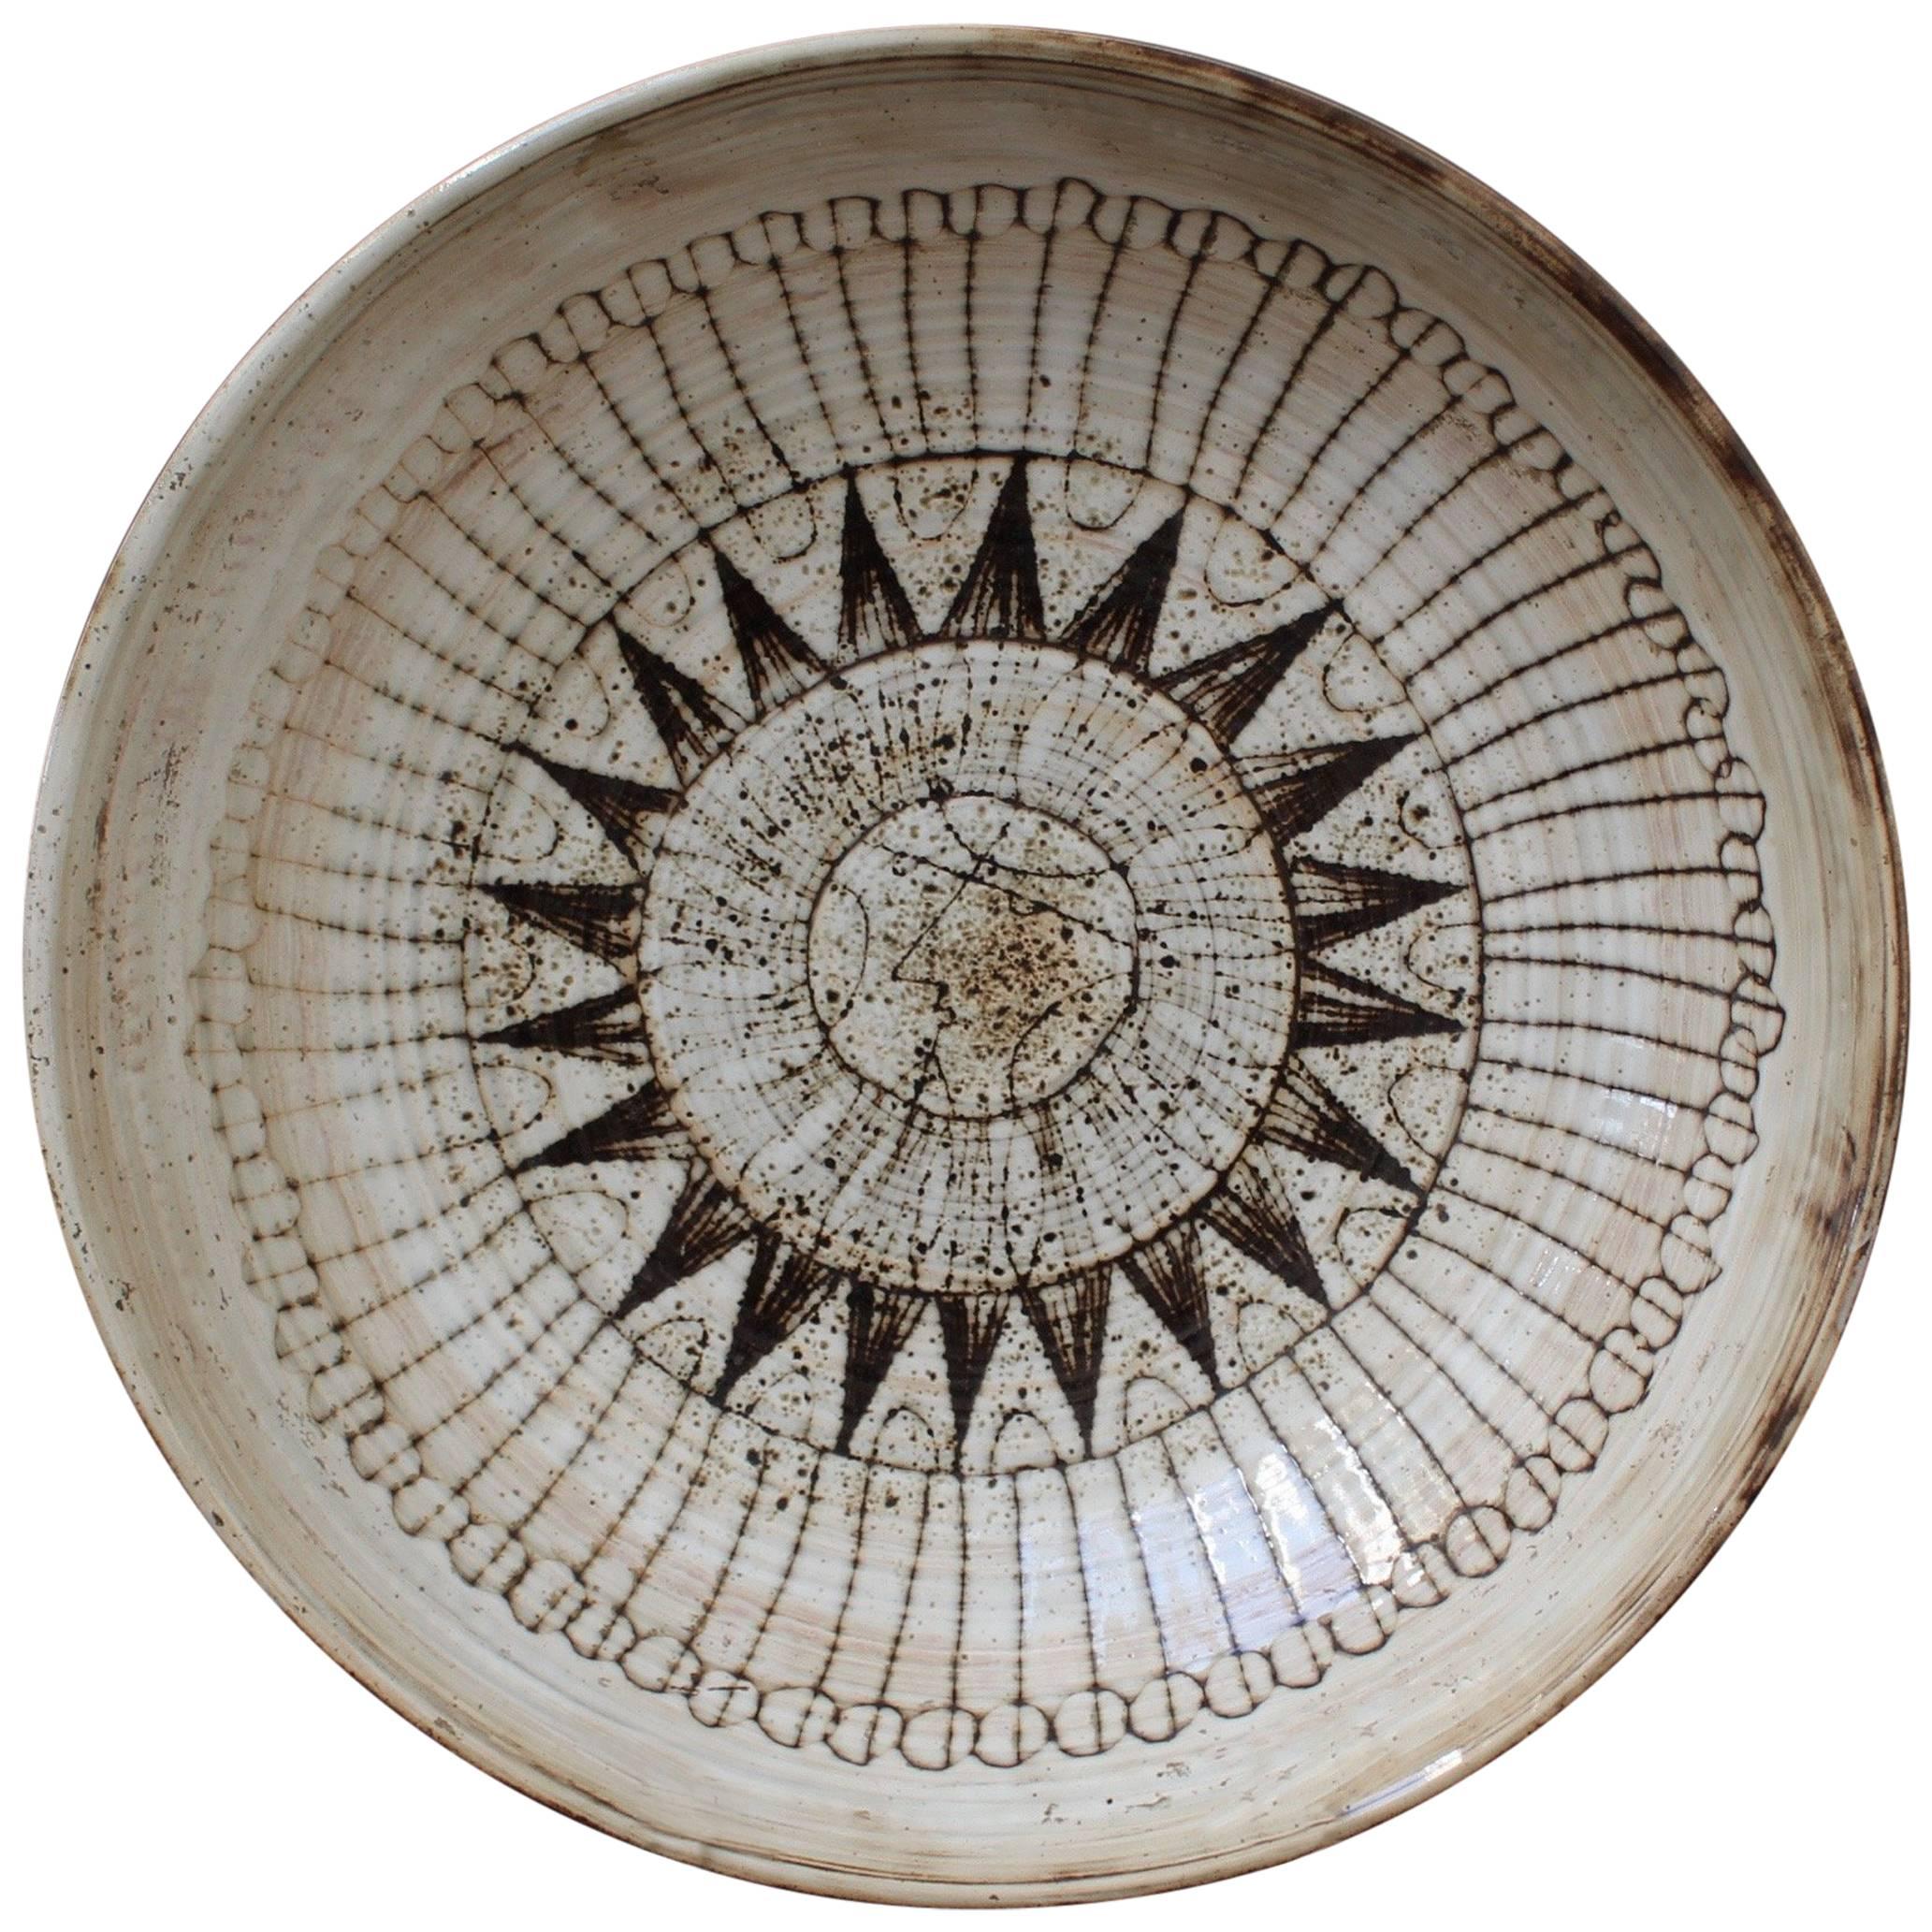 Large Decorative Bowl with Sunburst Motif by Jacques Pouchain-Atelier Dieulefit